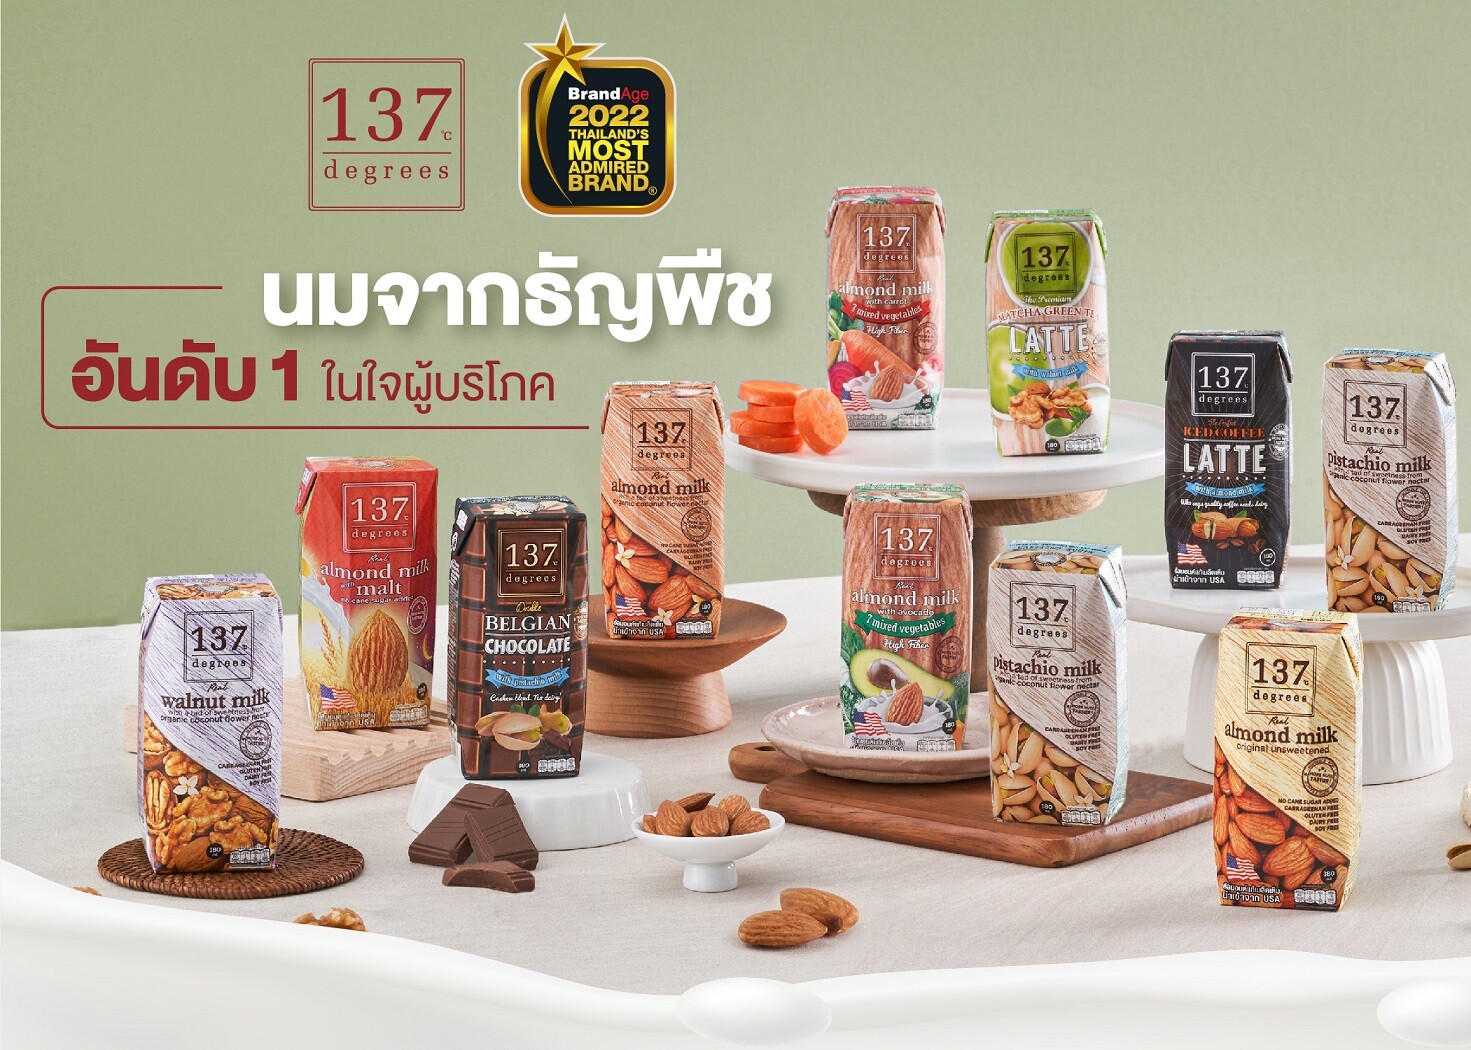 นม 137 ดีกรีตอกย้ำแบรนด์นมธัญพืชอันดับหนึ่งในใจผู้บริโภค คว้ารางวัล 2022 Thailand's Most Admired Brand